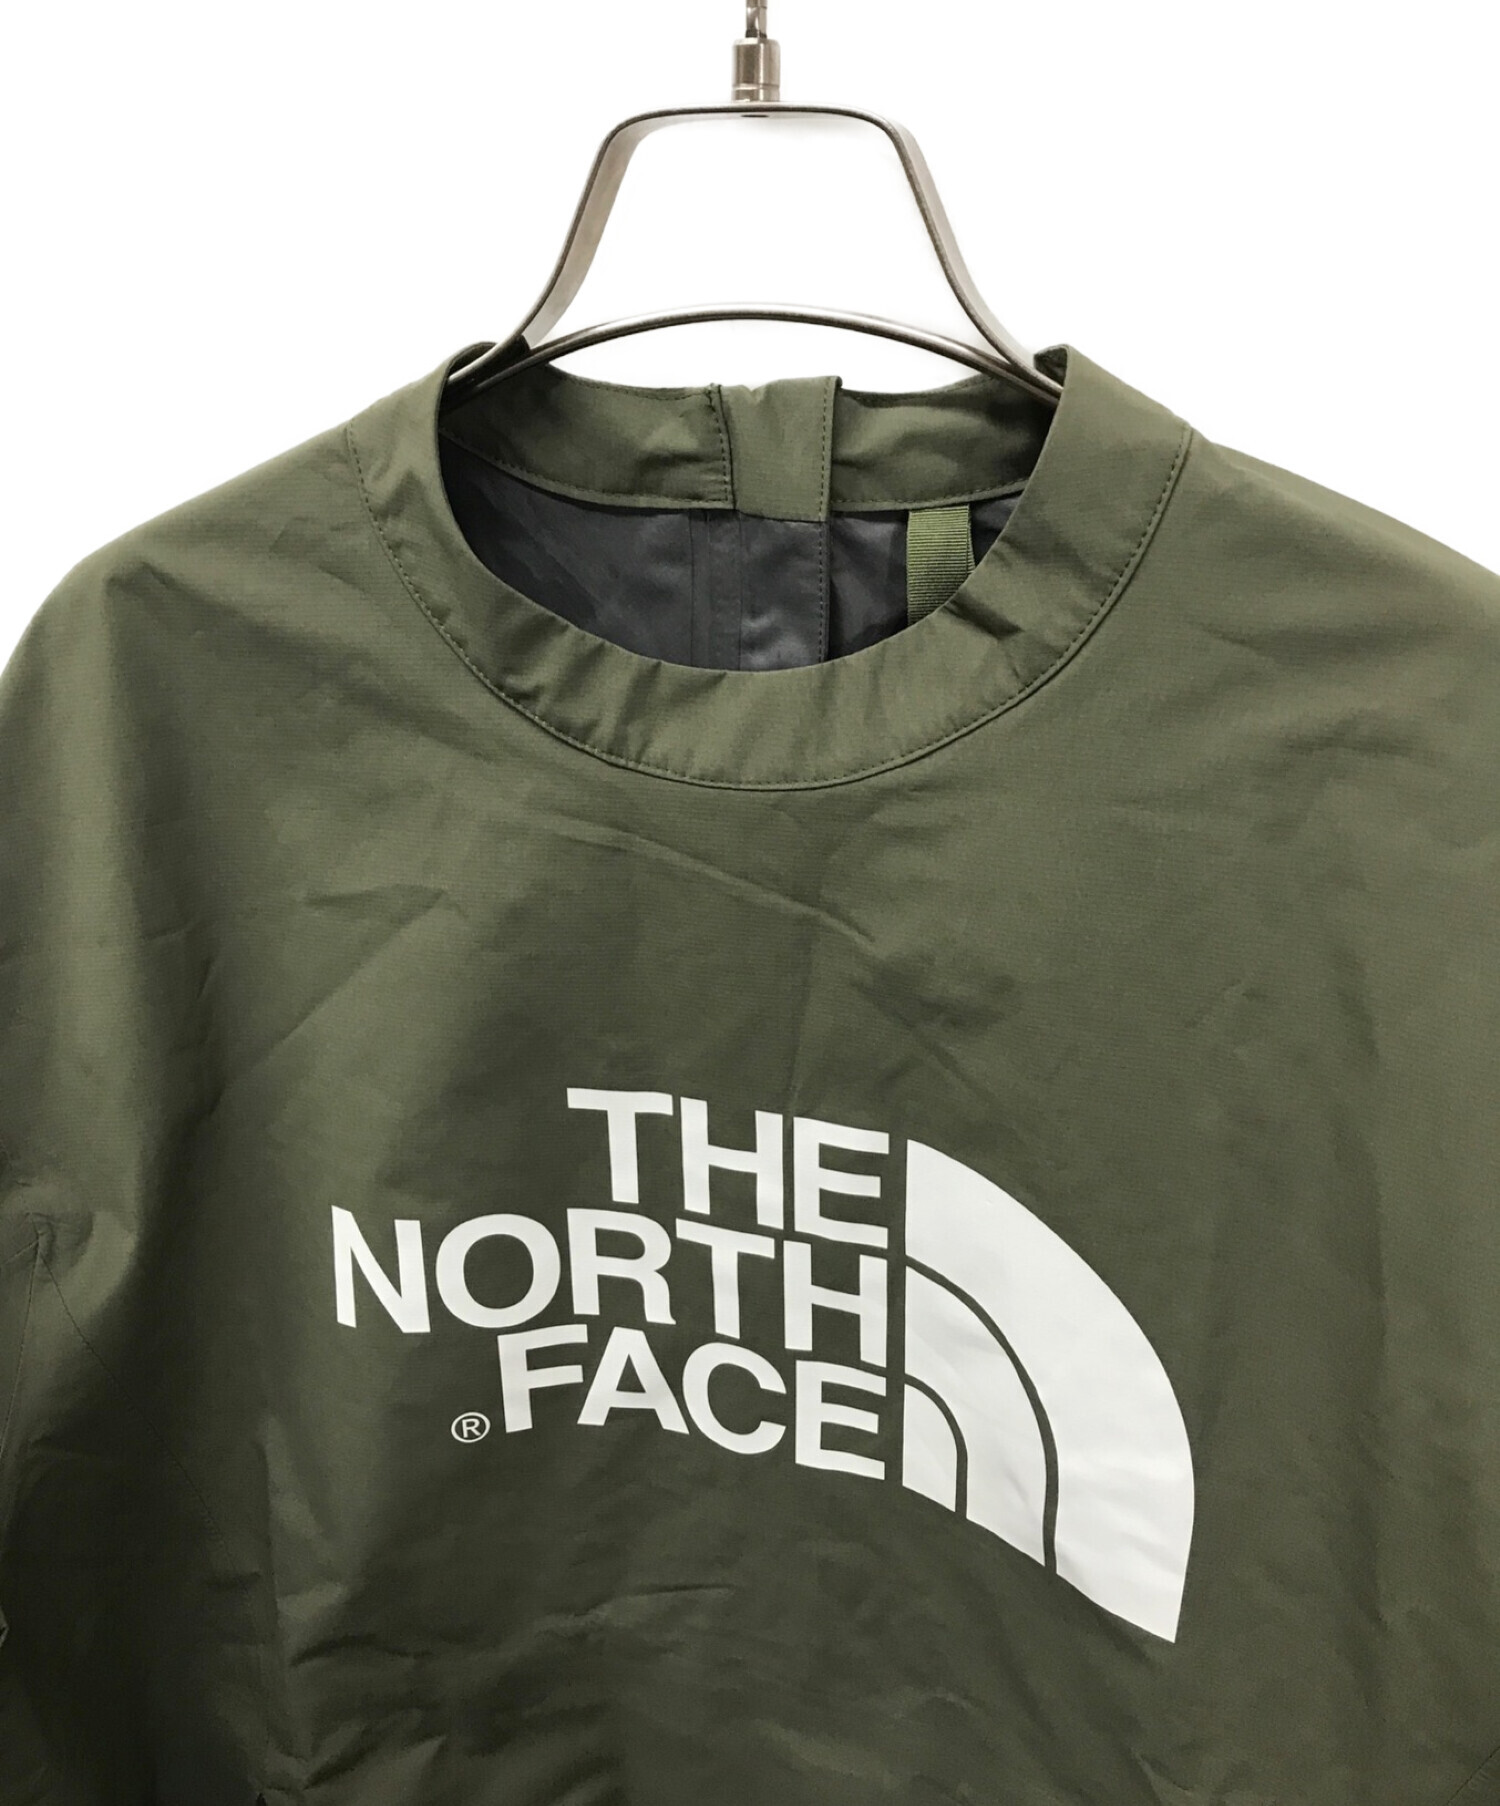 THE NORTH FACE (ザ ノース フェイス) HYKE (ハイク) MOUNTAIN TOP マウンテントップ NPW693HY オリーブ  サイズ:S 未使用品